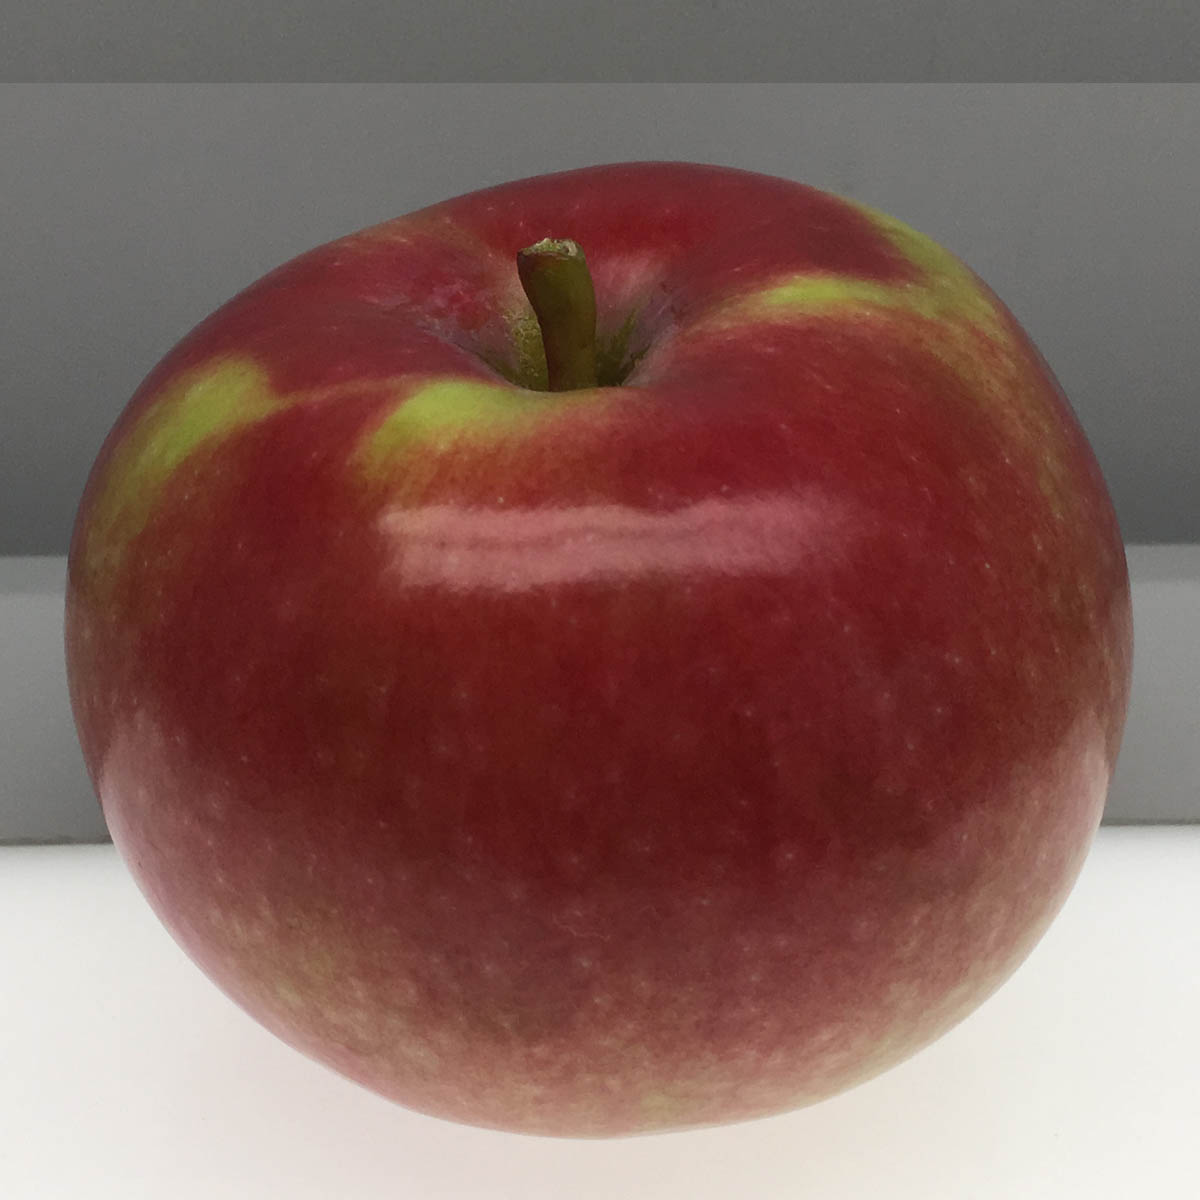 Gravenstein apple